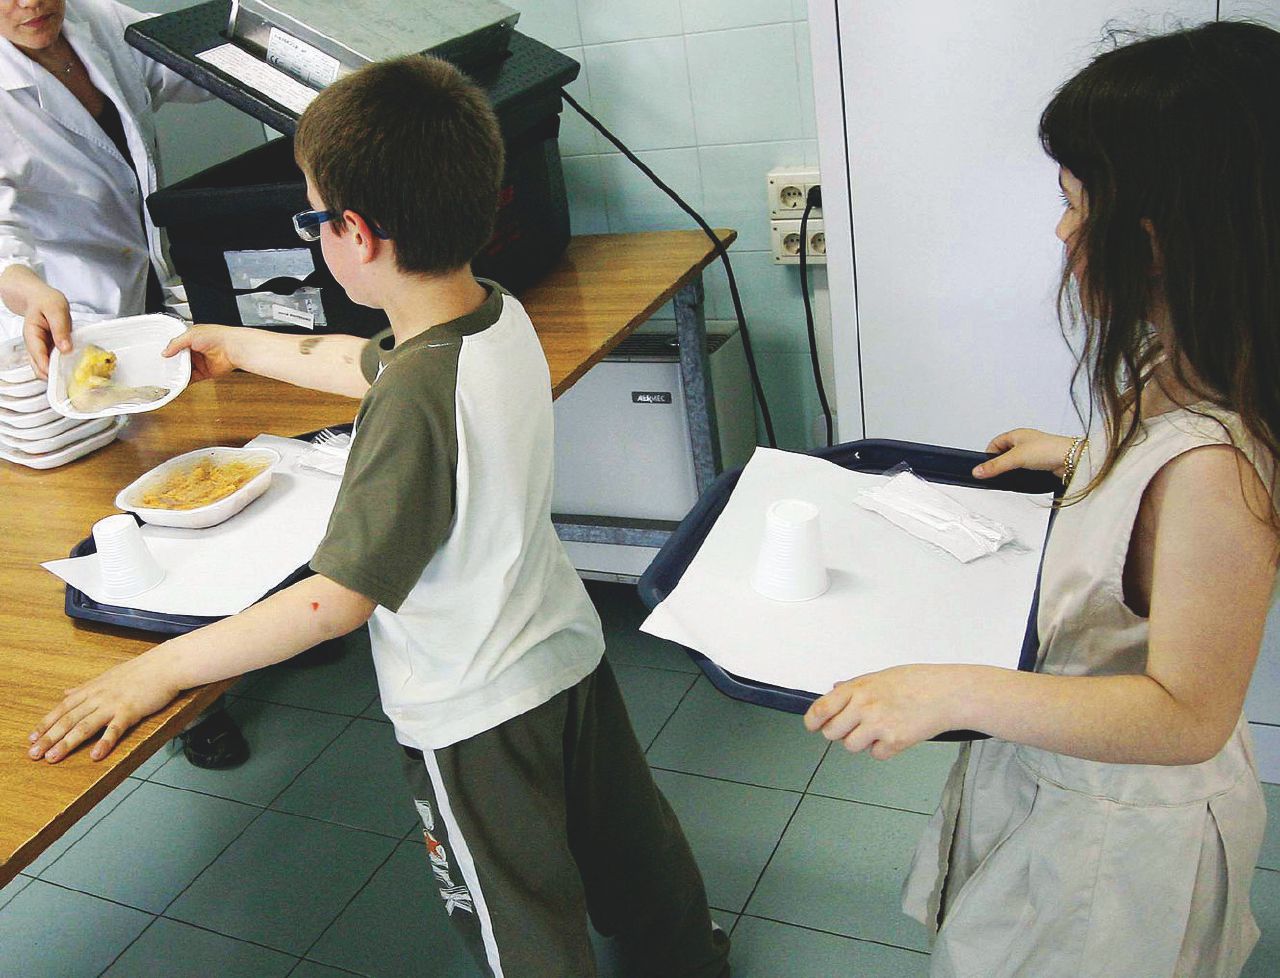 Mense scolastiche, scritta dalle imprese la relazione illustrativa della legge che vieta il panino da casa